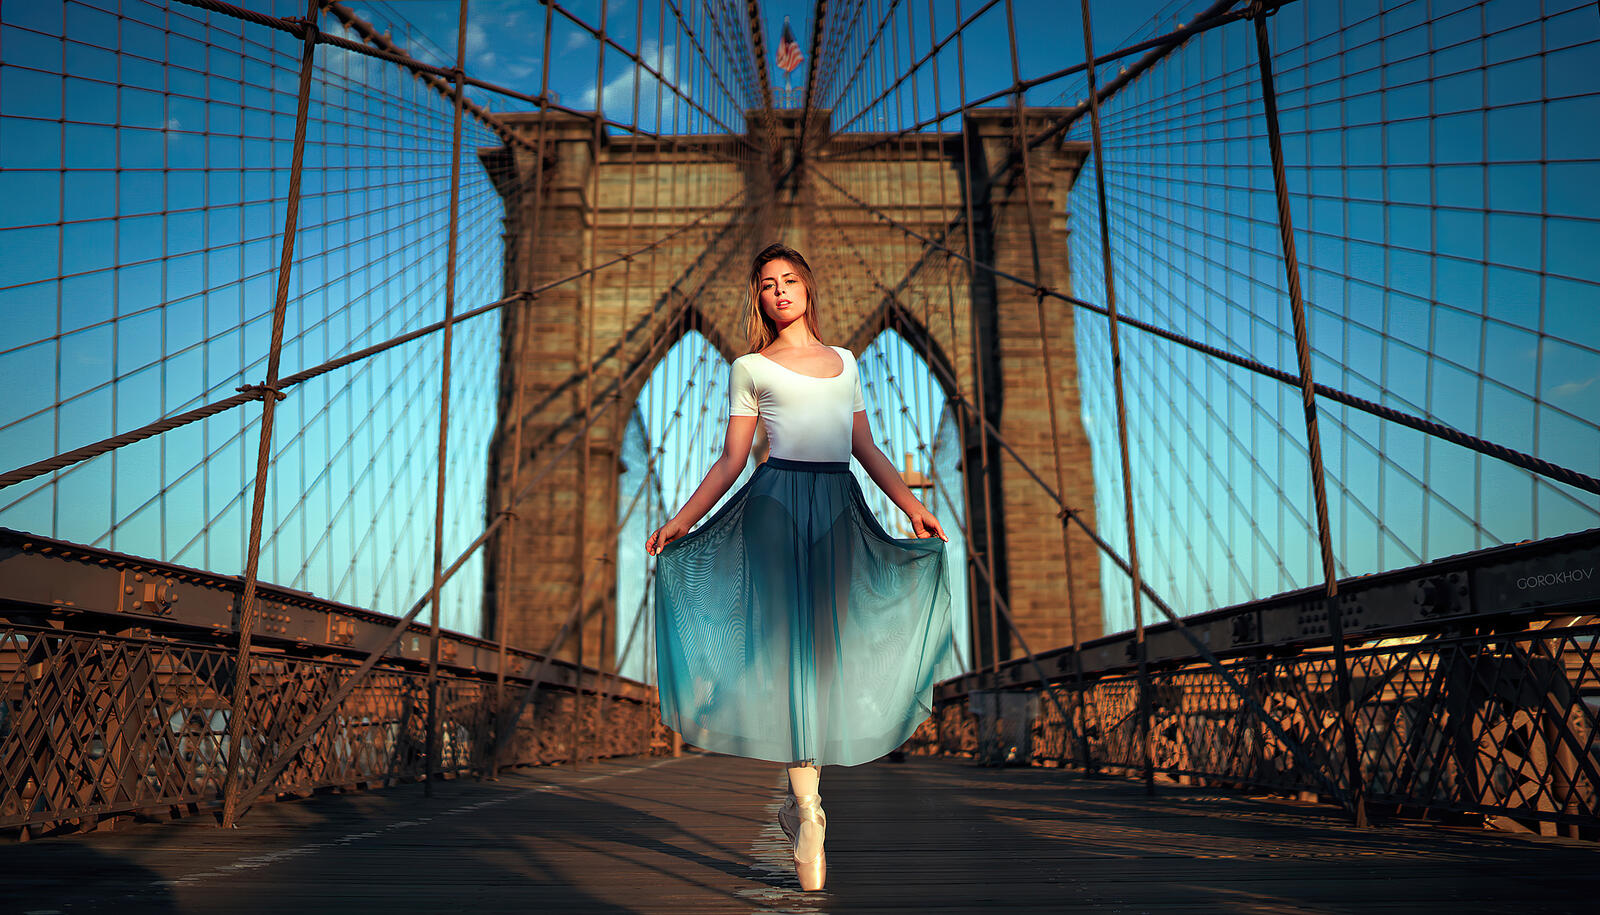 Бесплатное фото Девушка в легком платье позирует на большом пешеходном мосту